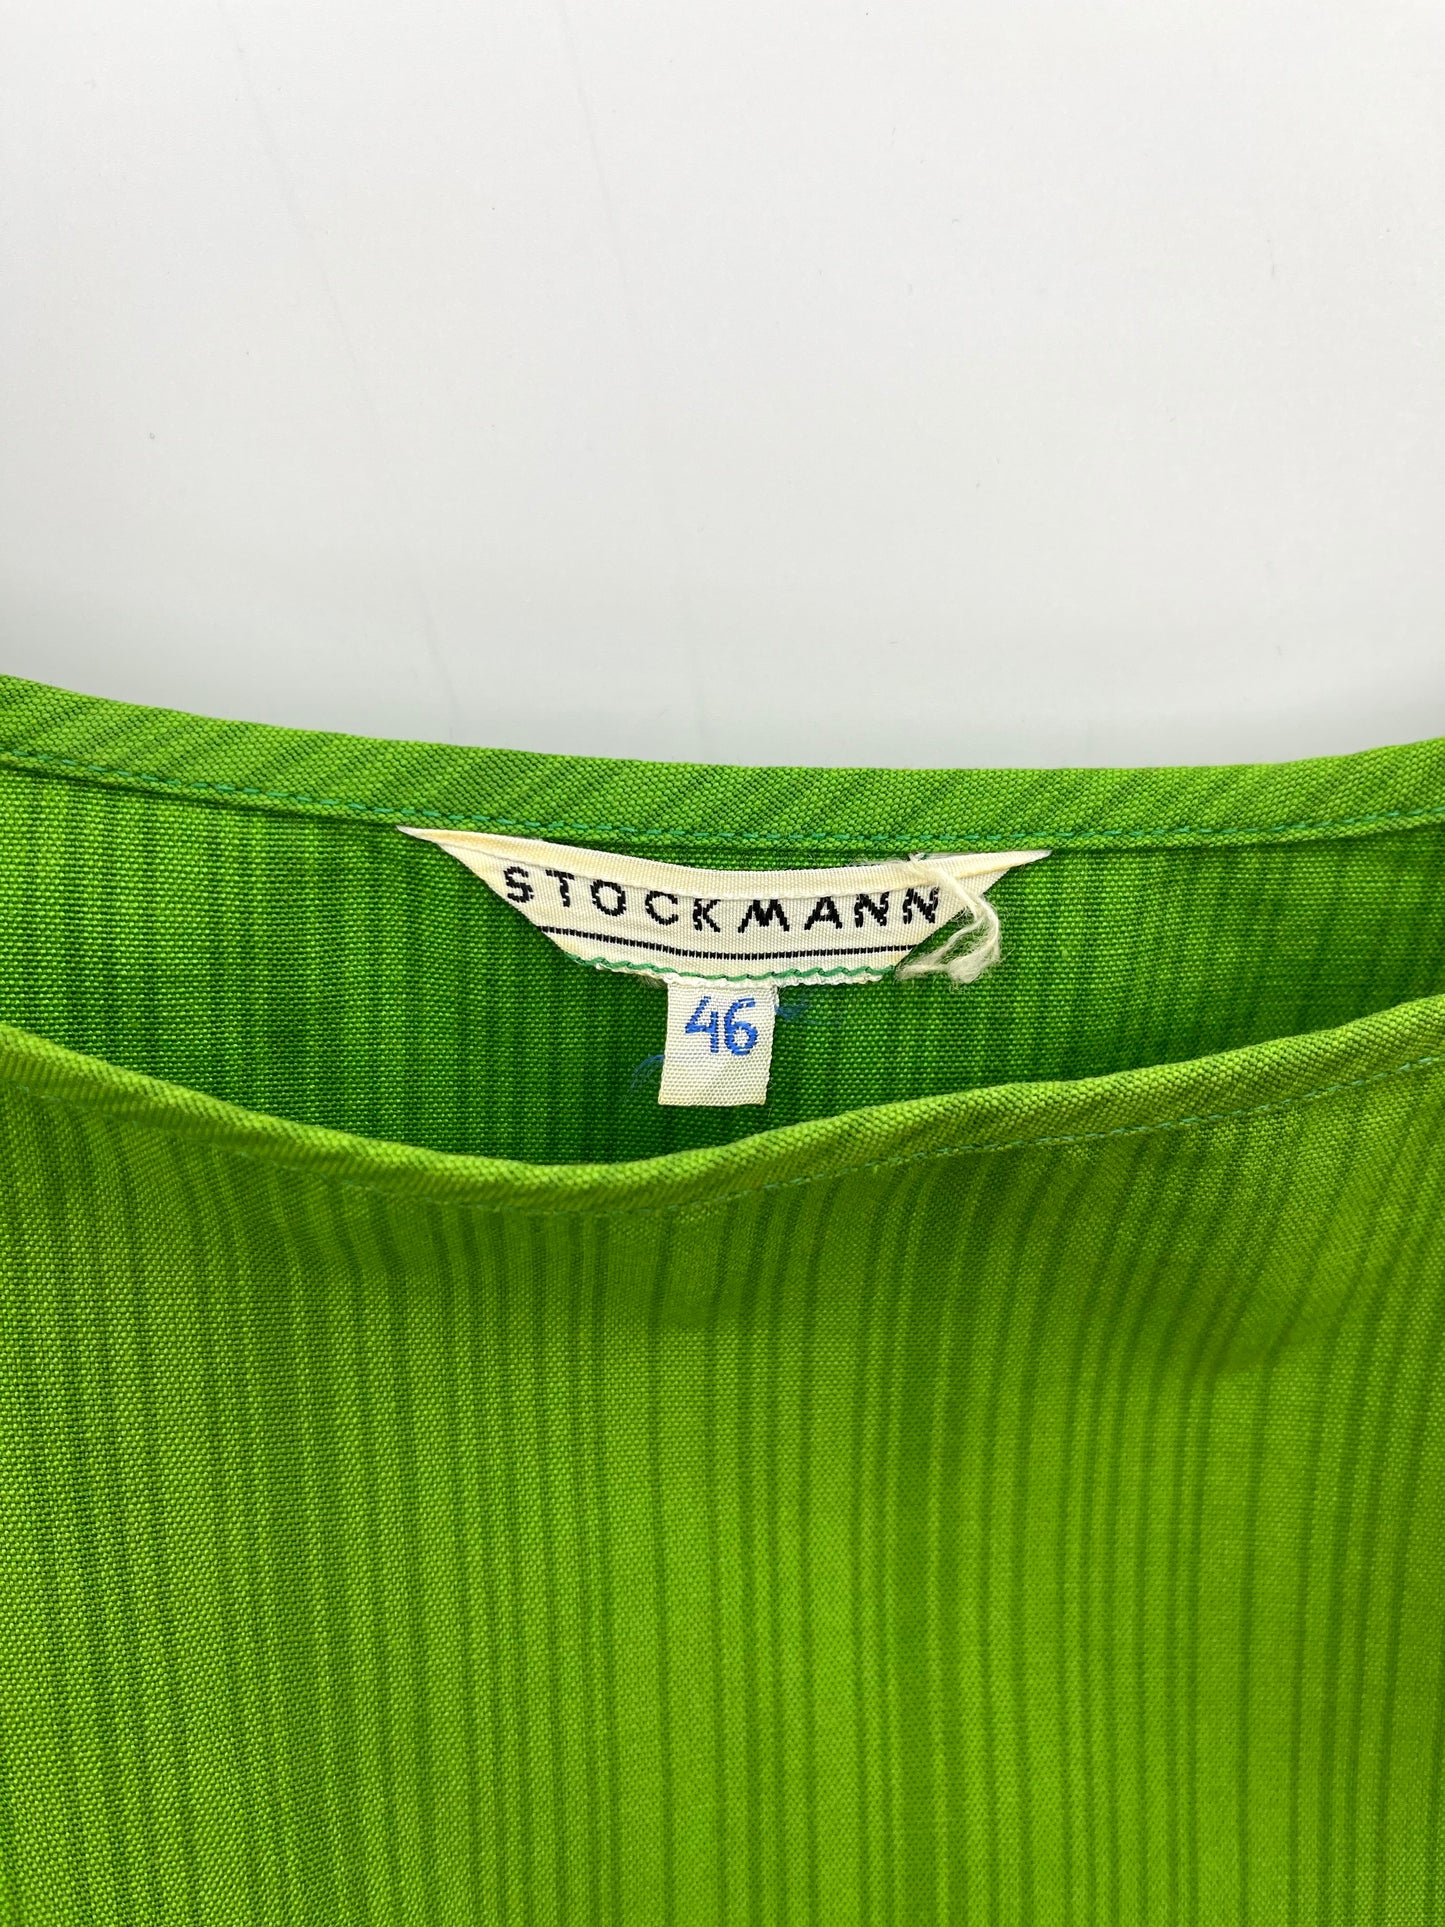 Stockmann, vihreä lyhyt puuvillatoppi, 60-luku, koko n.40